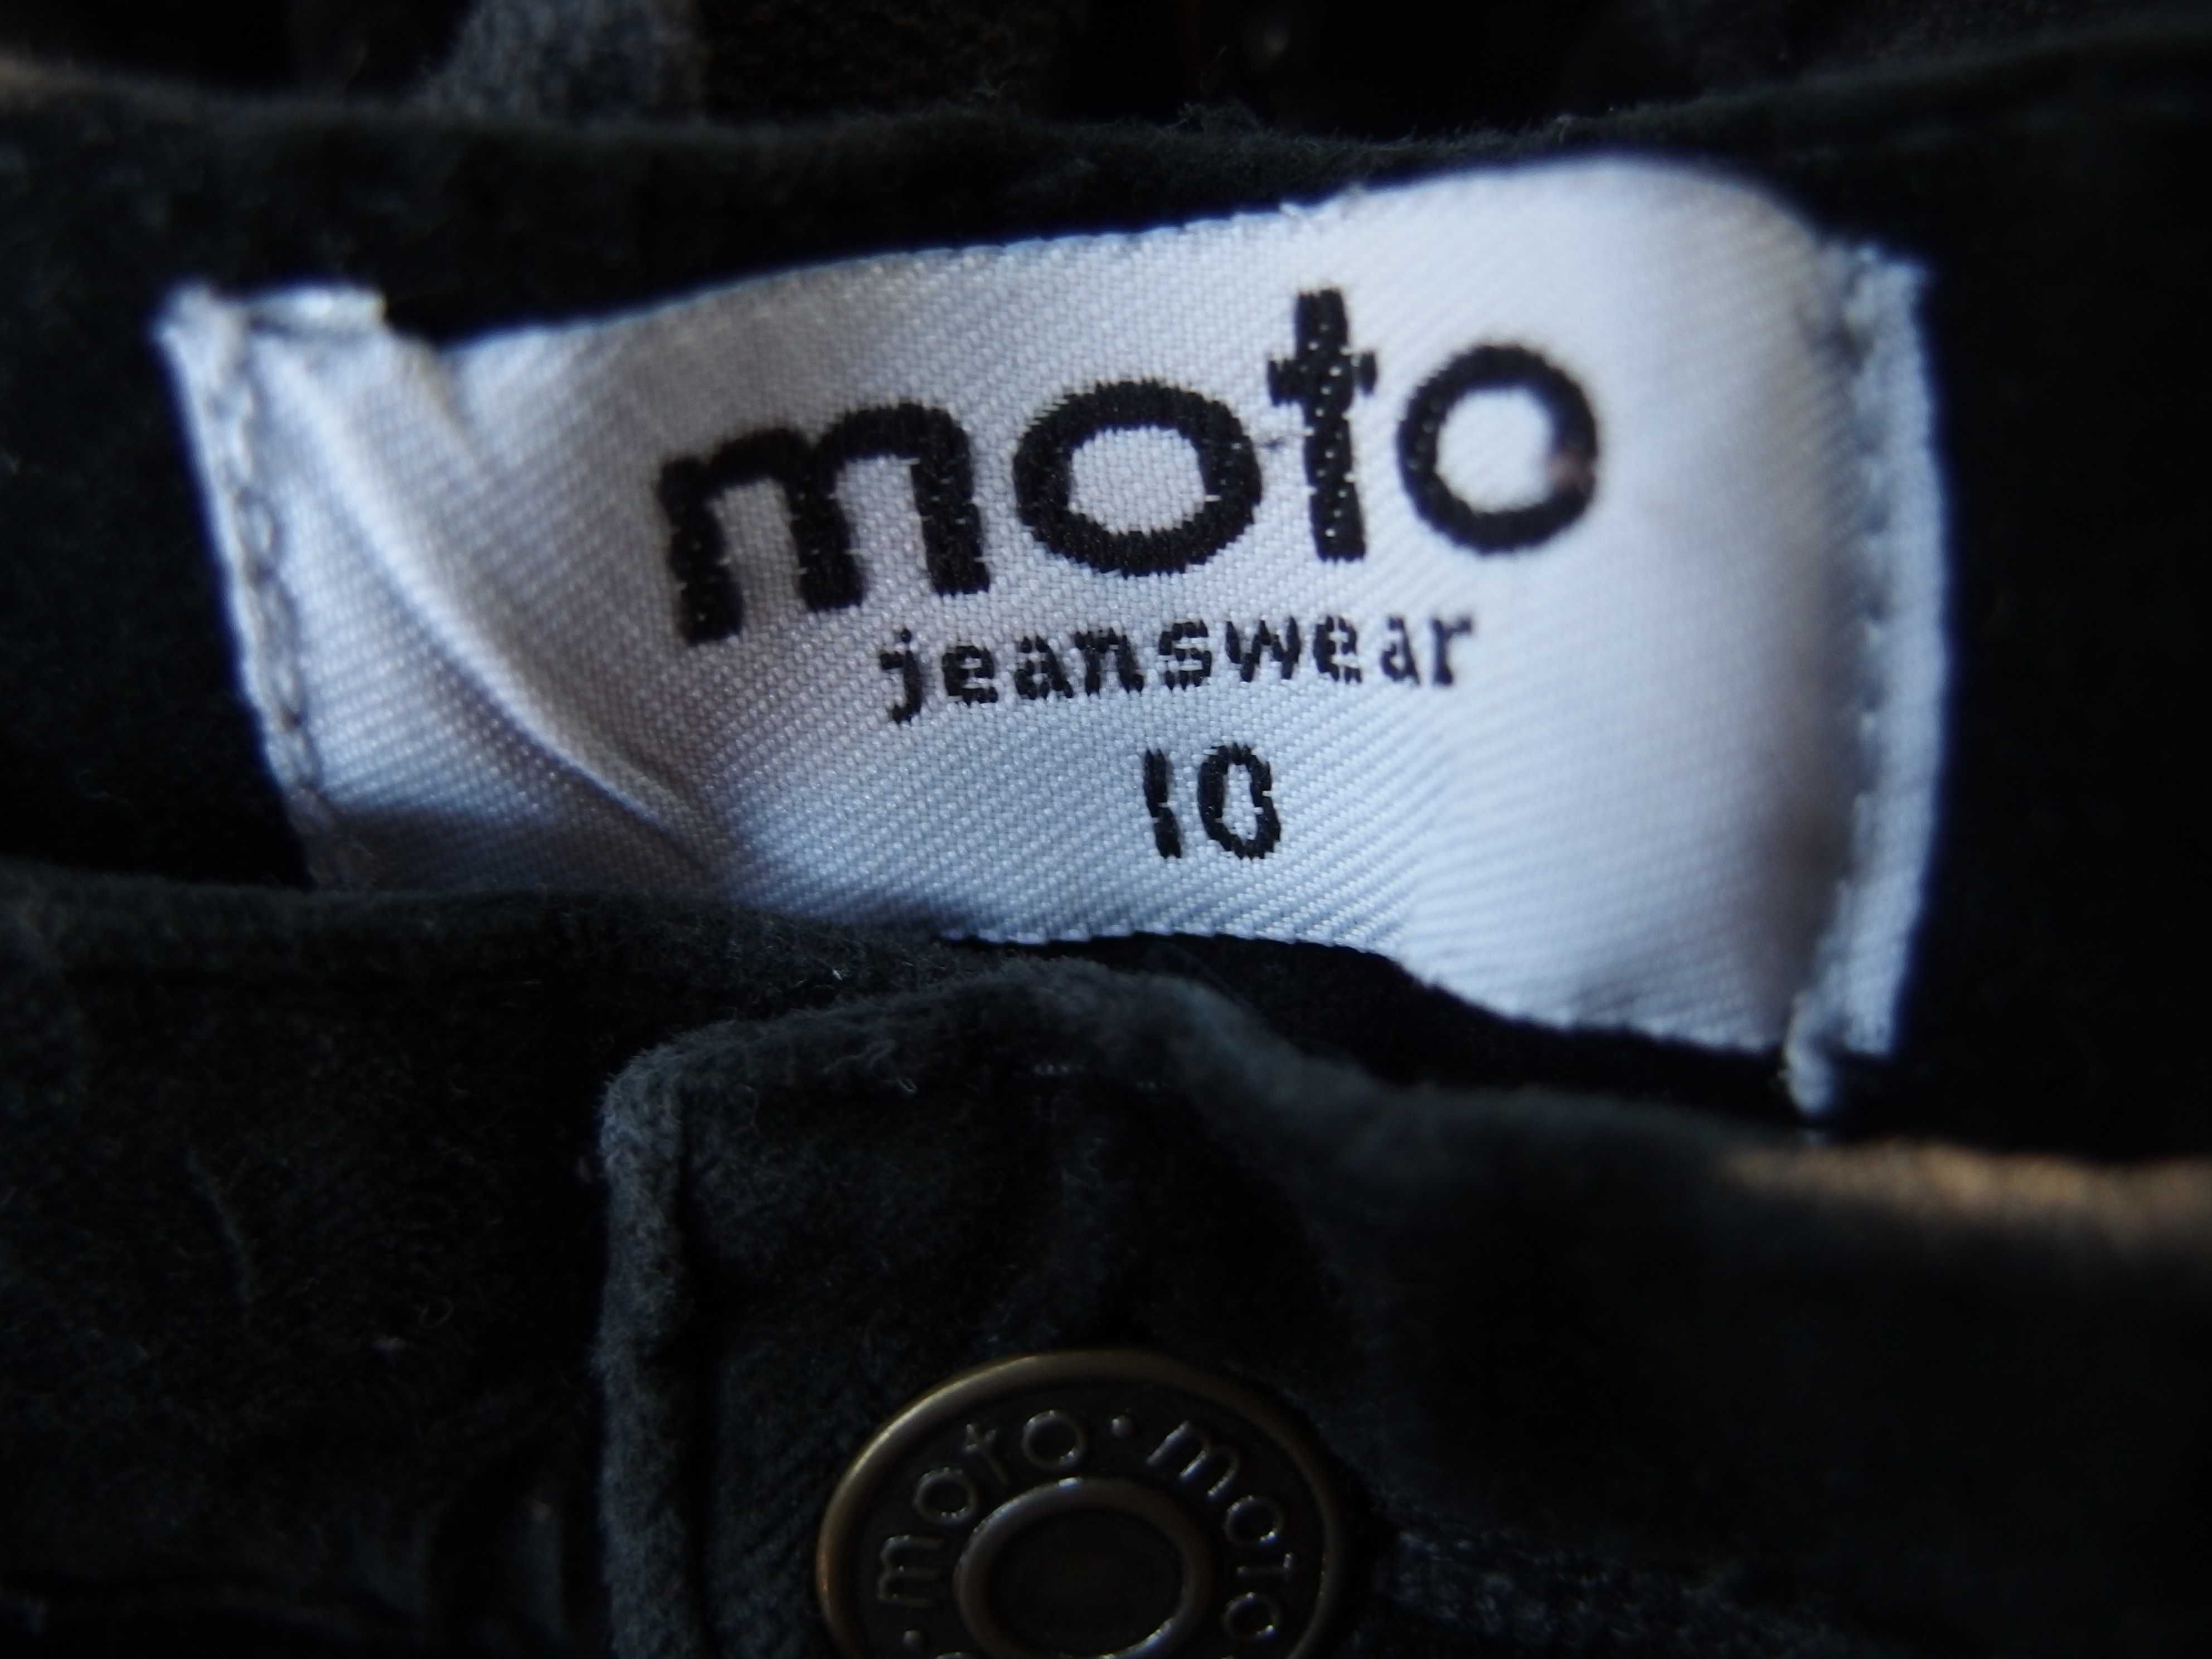 Spodnie welurowe Moto Jeanswear. Made in Hong Kong. Czarne. Haft